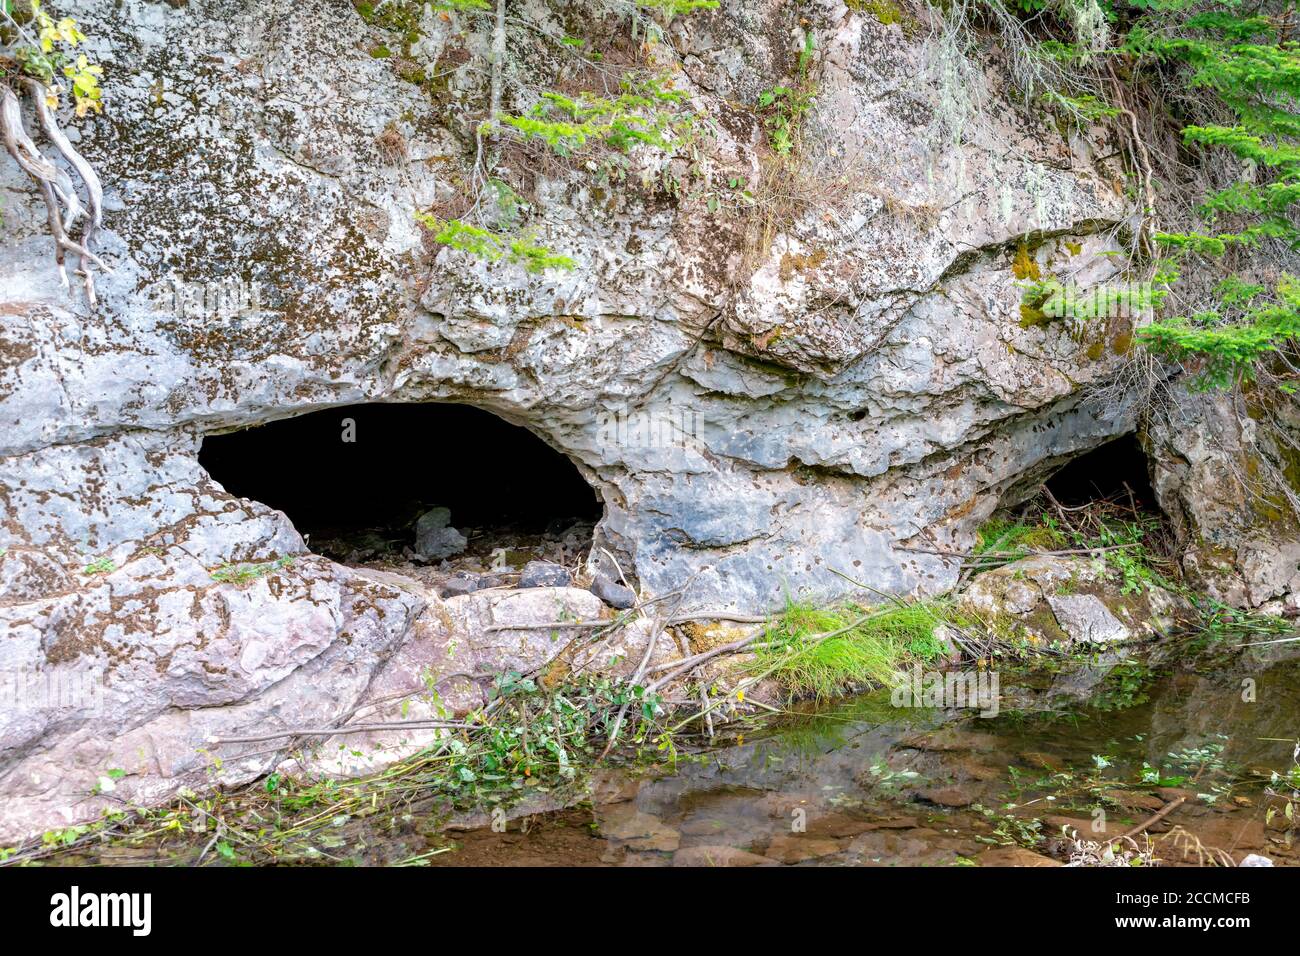 L'ingresso ad una grotta sul lato di una scogliera. Di fronte all'apertura è presente una piscina d'acqua. La scogliera è fatta di pietra calcarea. Foto Stock